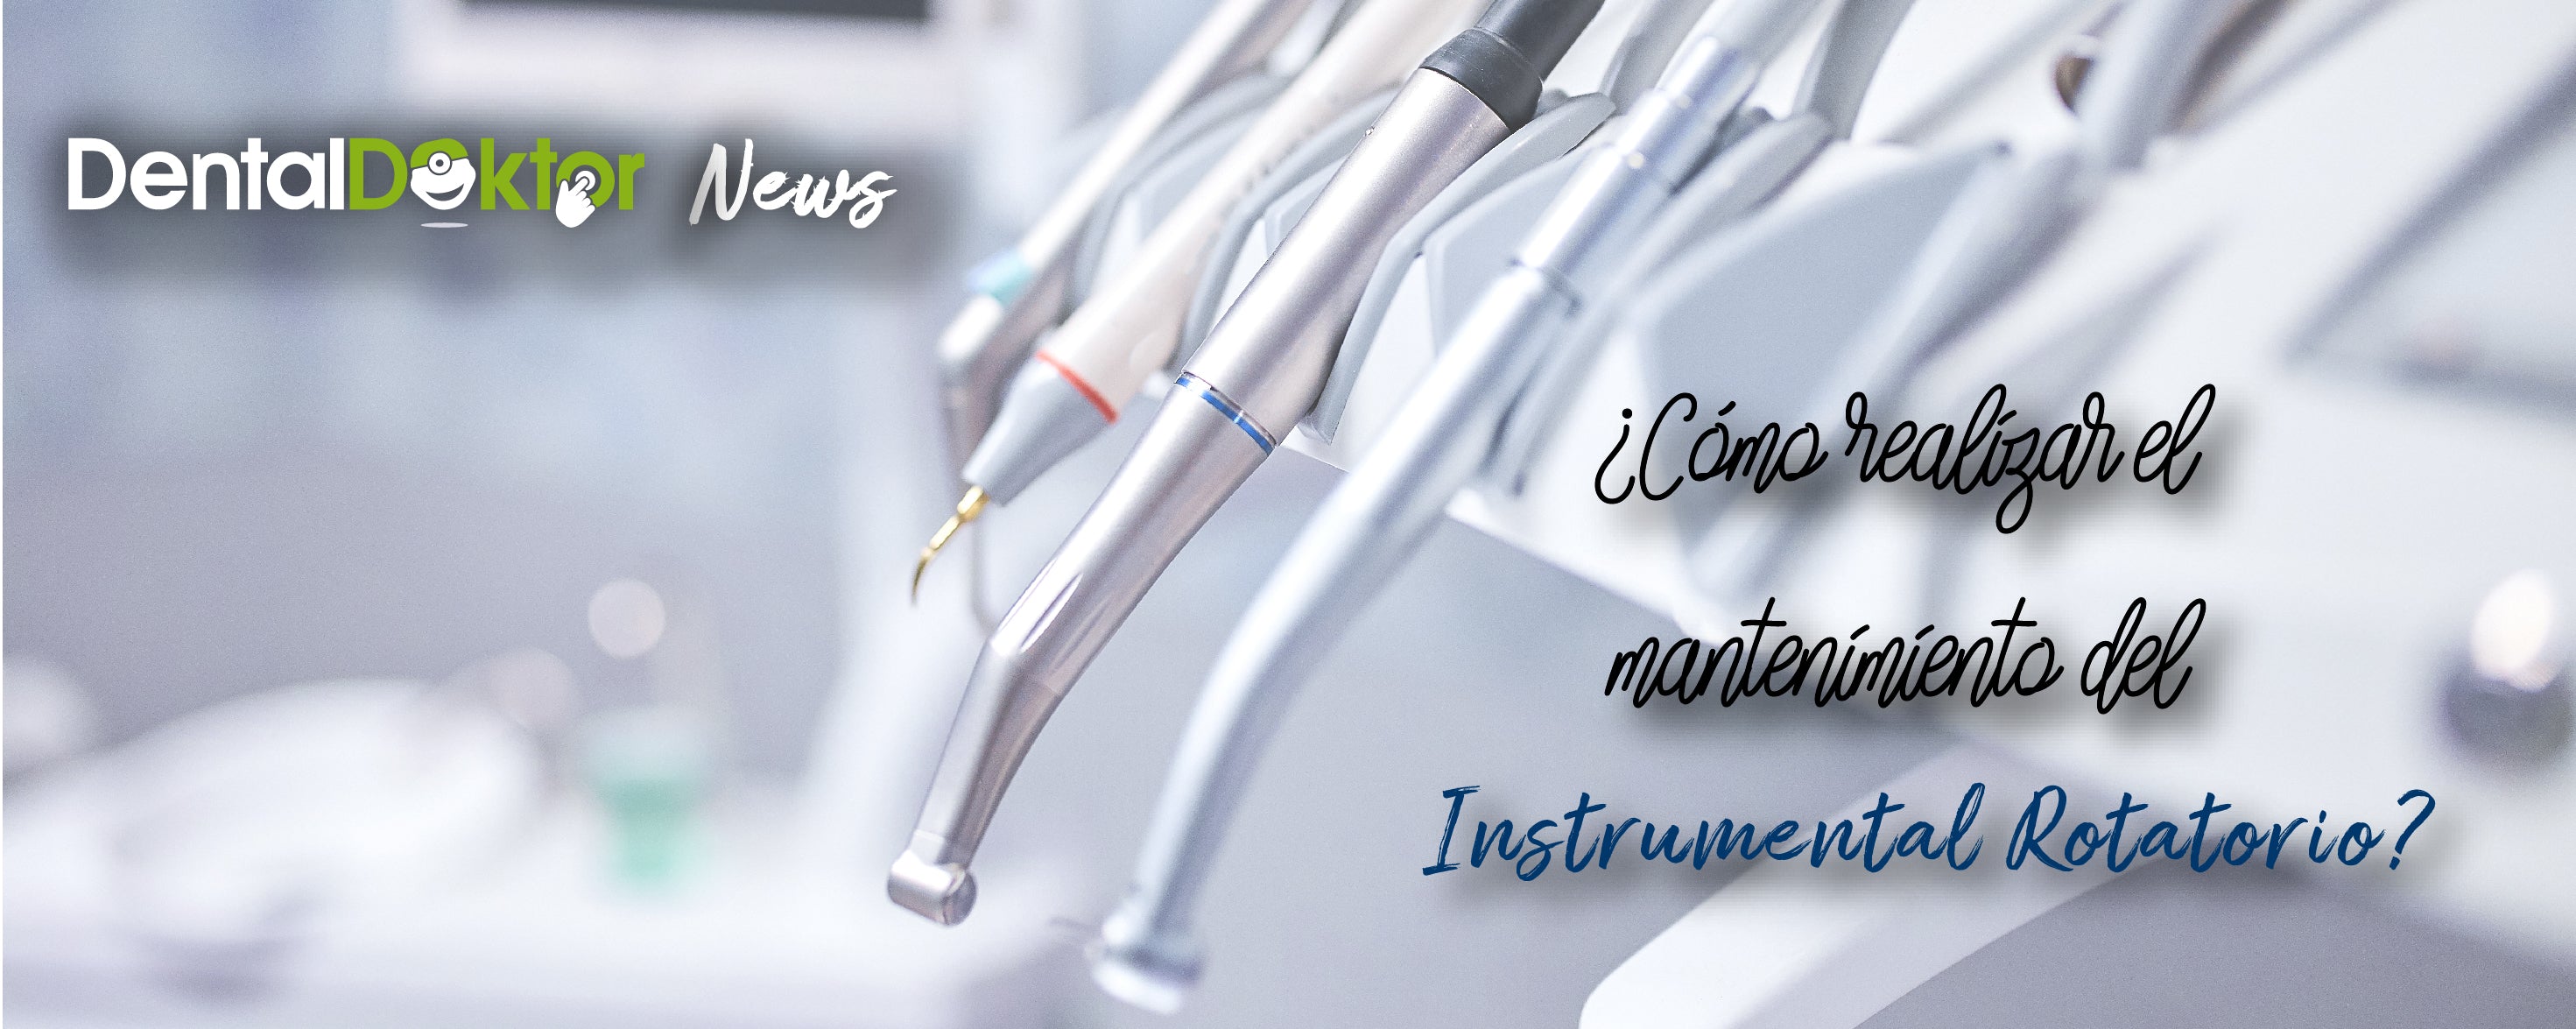 ¿Cómo realizar un buen mantenimiento del instrumental rotatorio en una clínica dental?